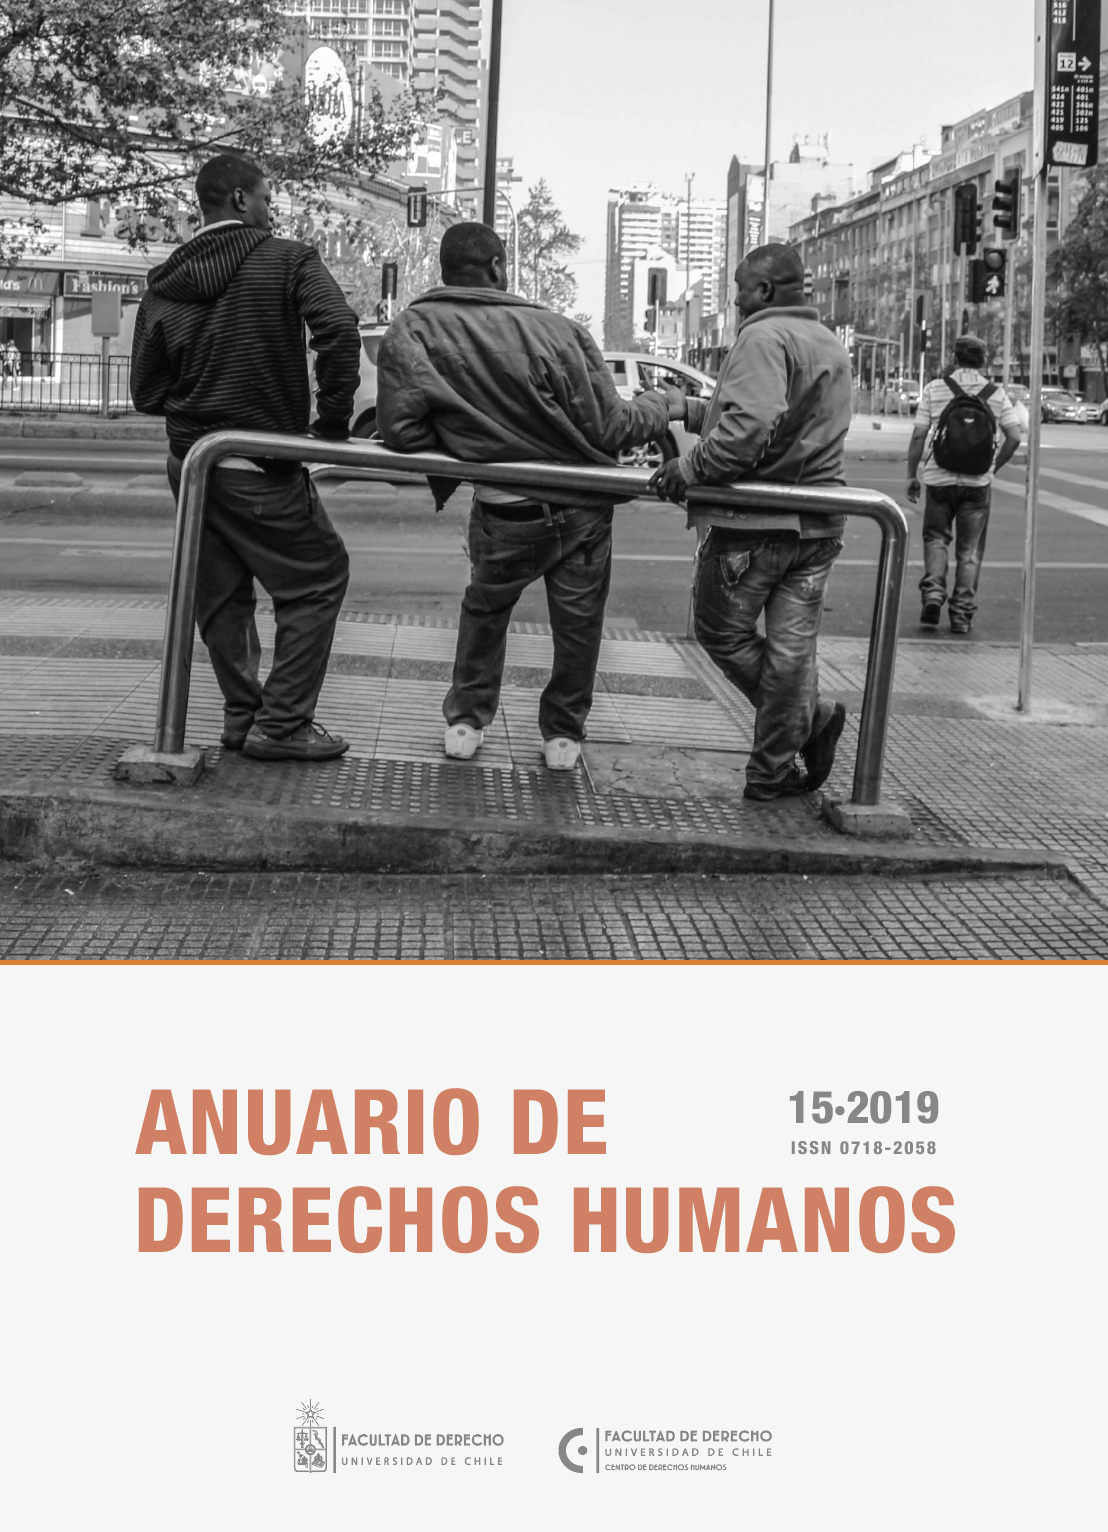 Anuario de Derechos Humanos. Portada